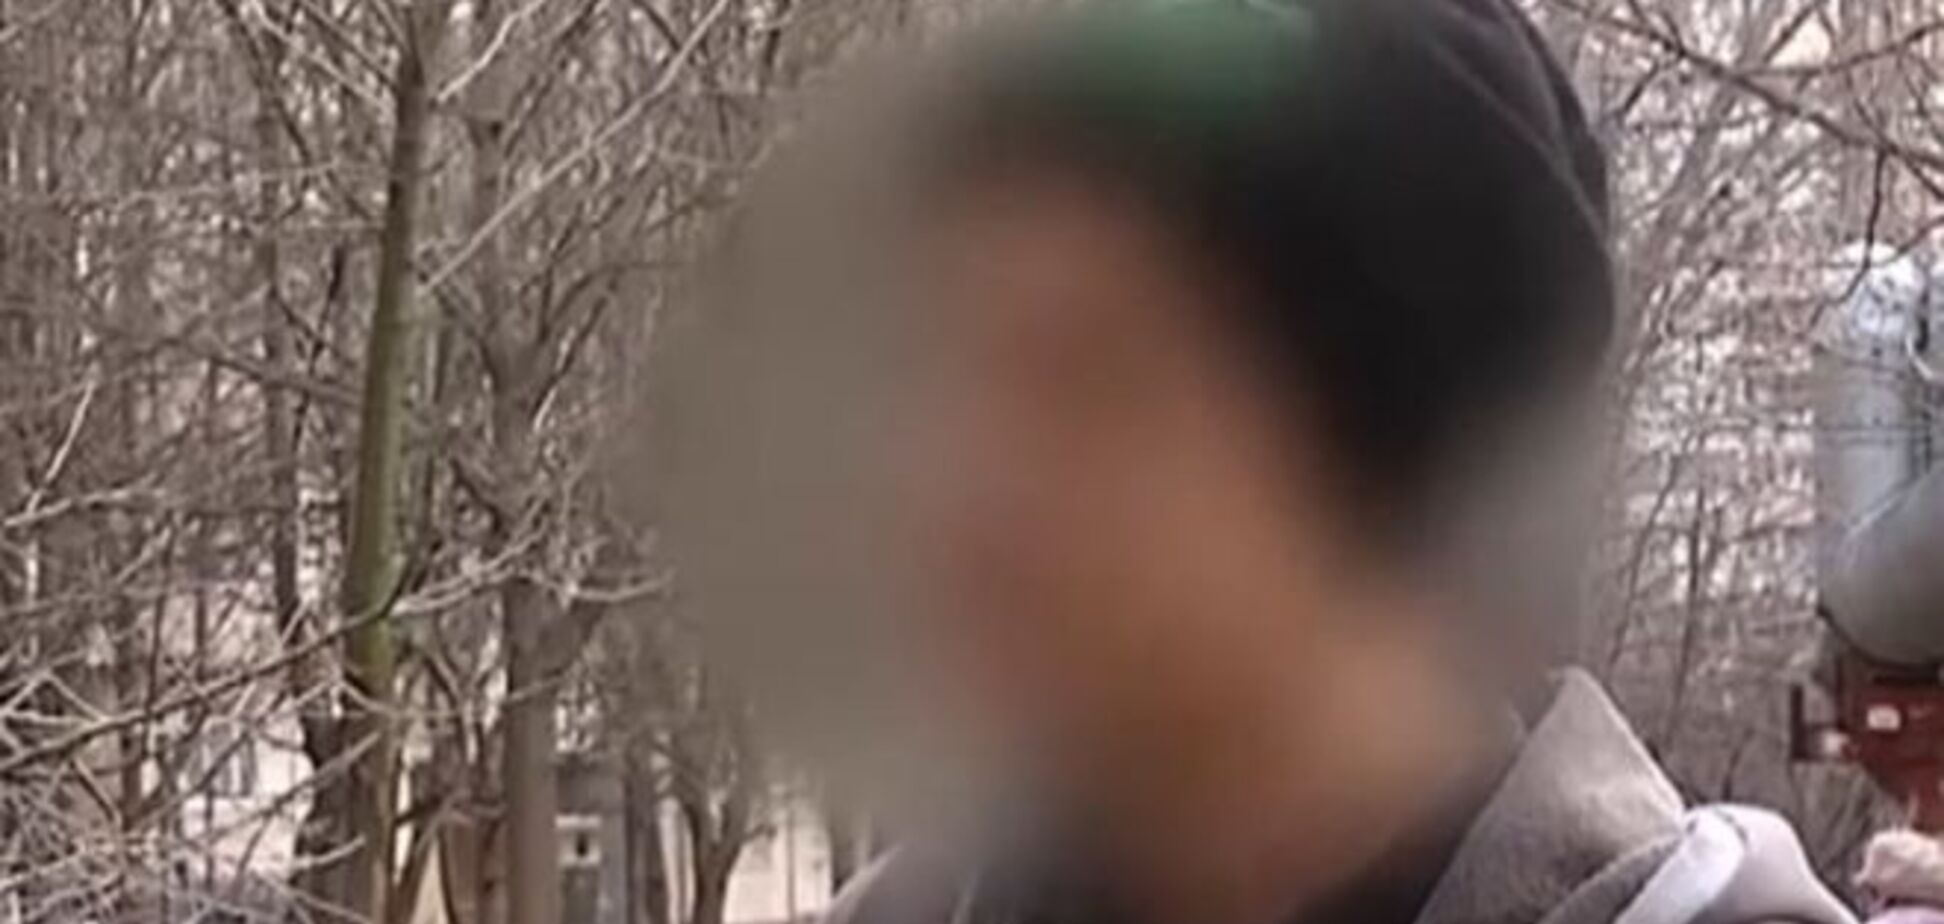 Подробности конфликта с одесским преподавателем: обозвал студента и ударил девушку